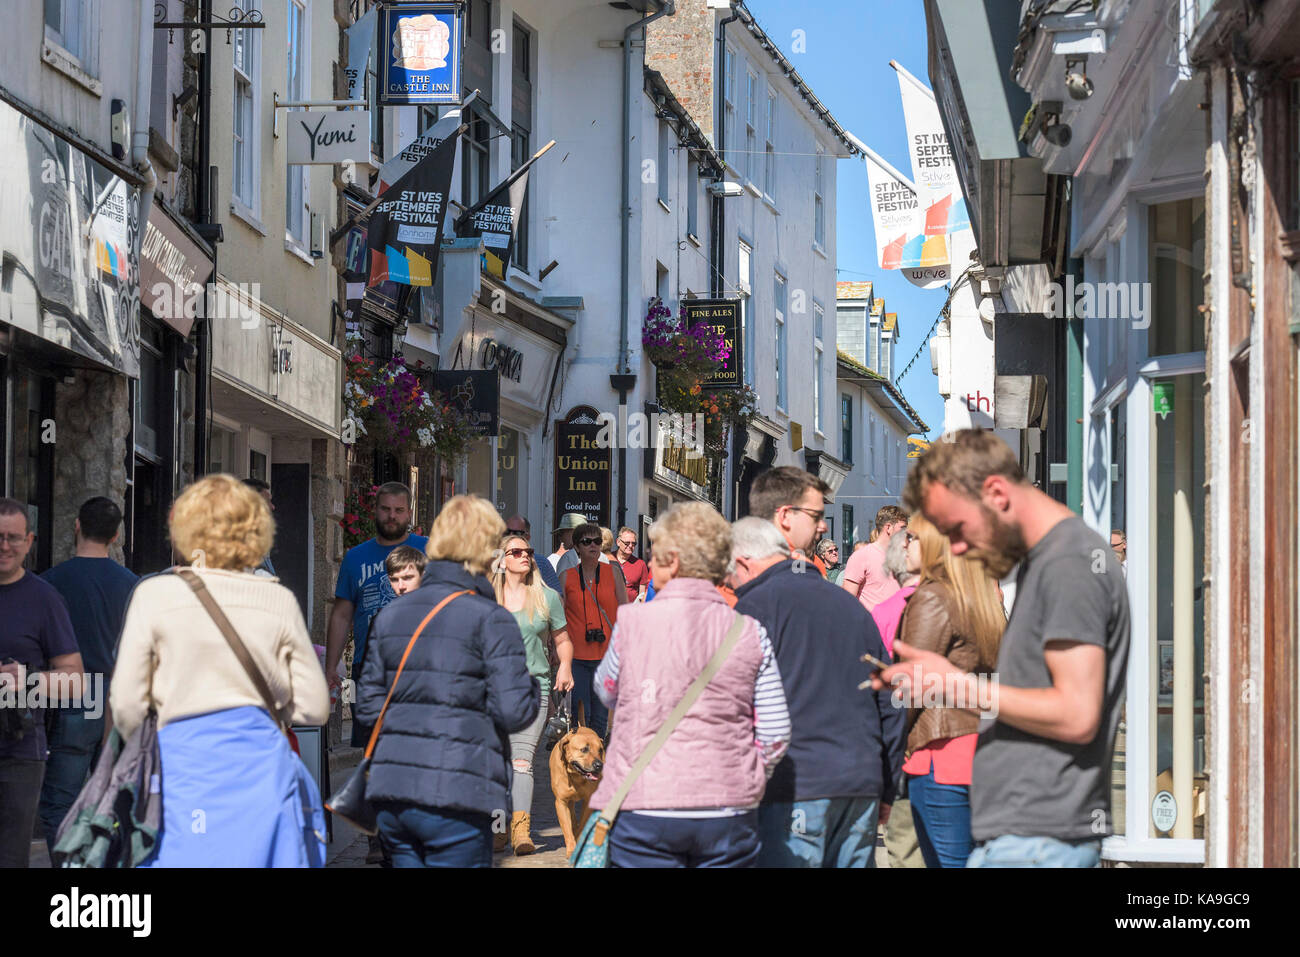 St Ives - una calle bulliciosa escena en el pintoresco centro de la ciudad de St Ives en Cornualles. Foto de stock